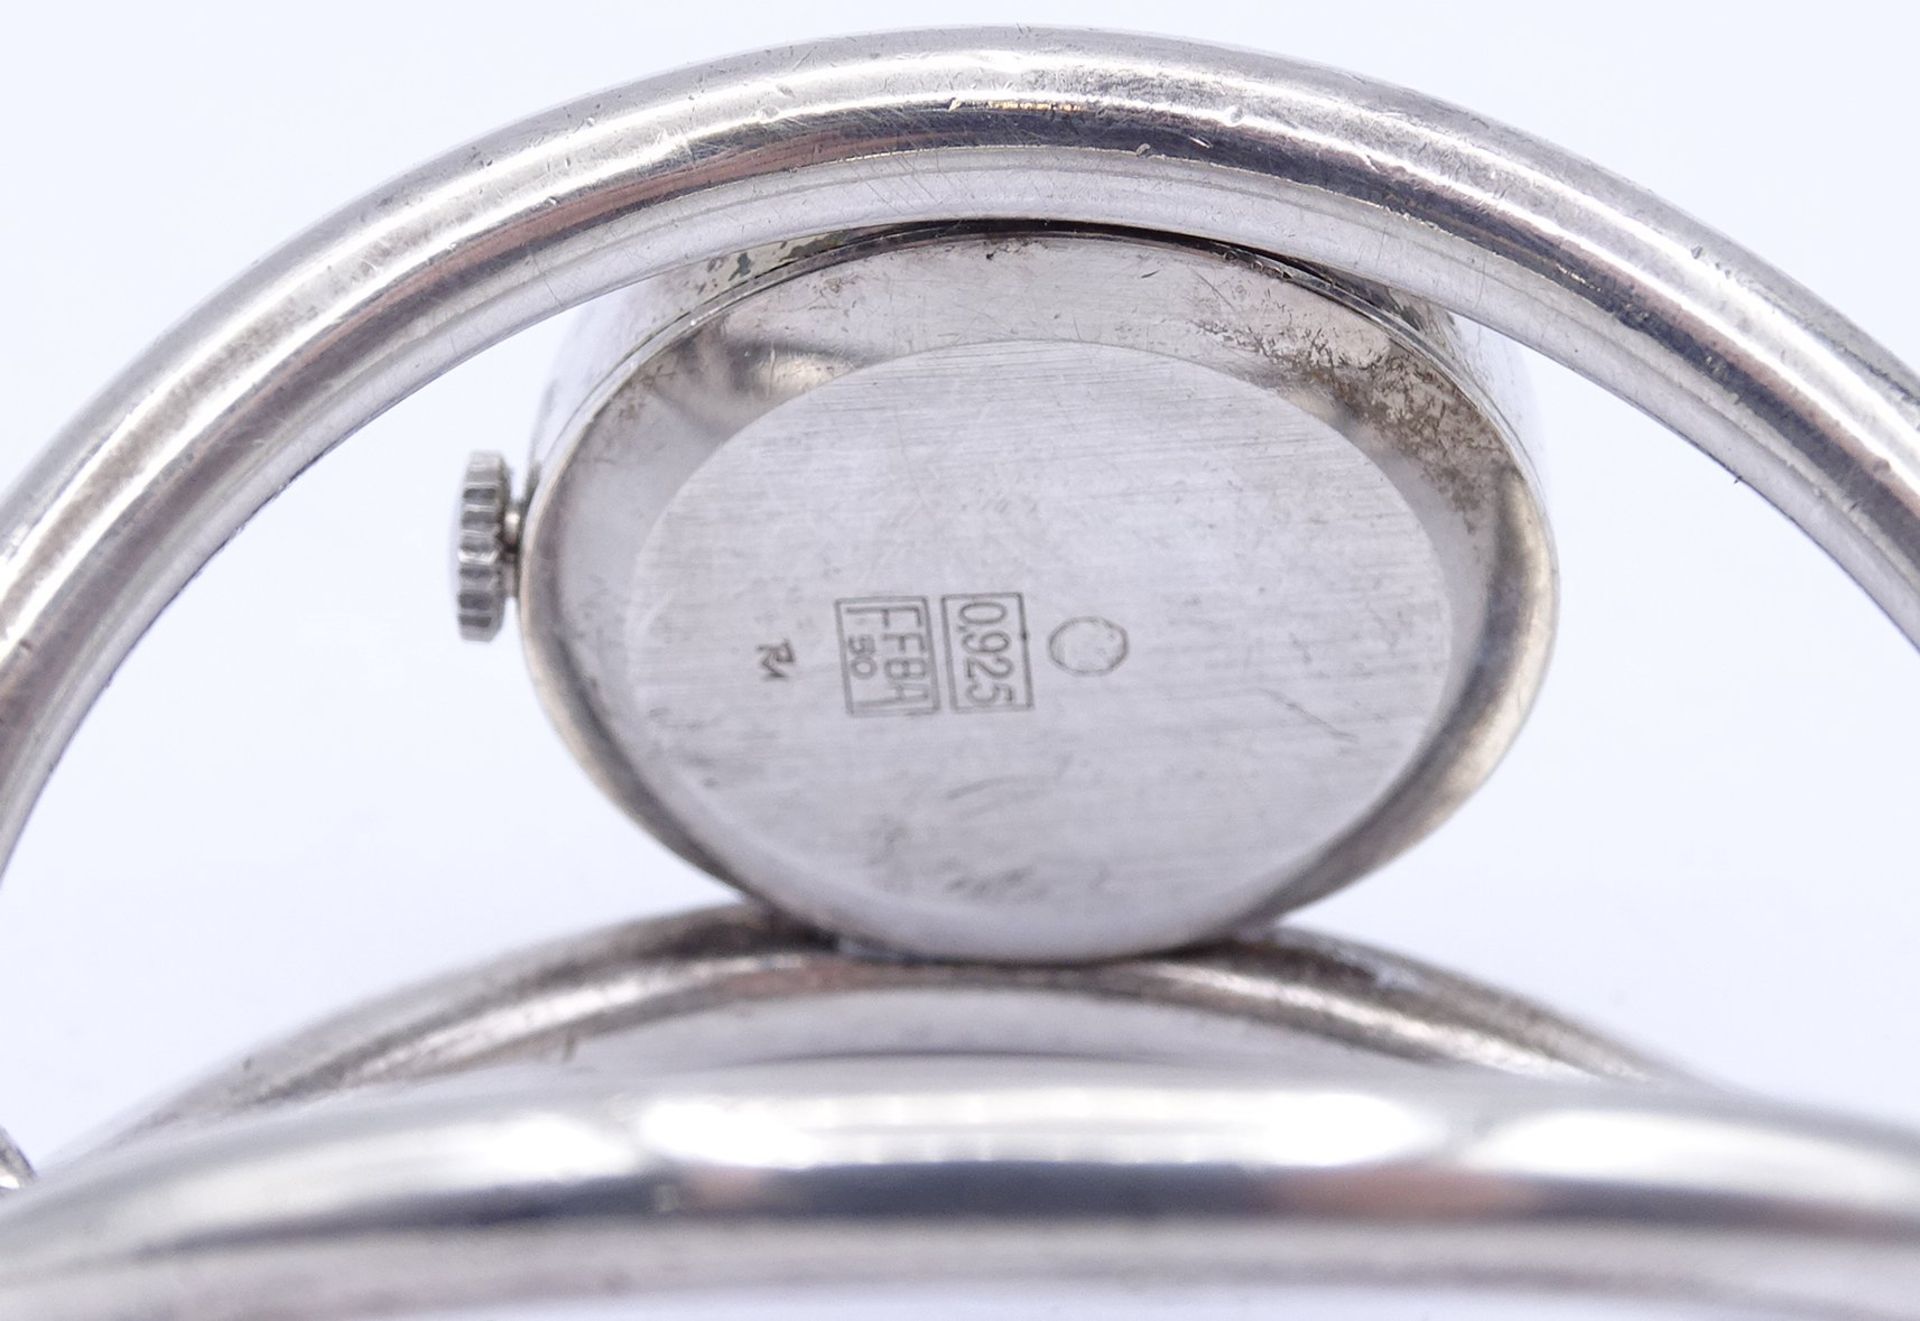 Massive Sterling Silber Armbanduhr , Markenlos, mechanisch, Werk läuft, D. 27,8mm, 106g. - Bild 4 aus 5